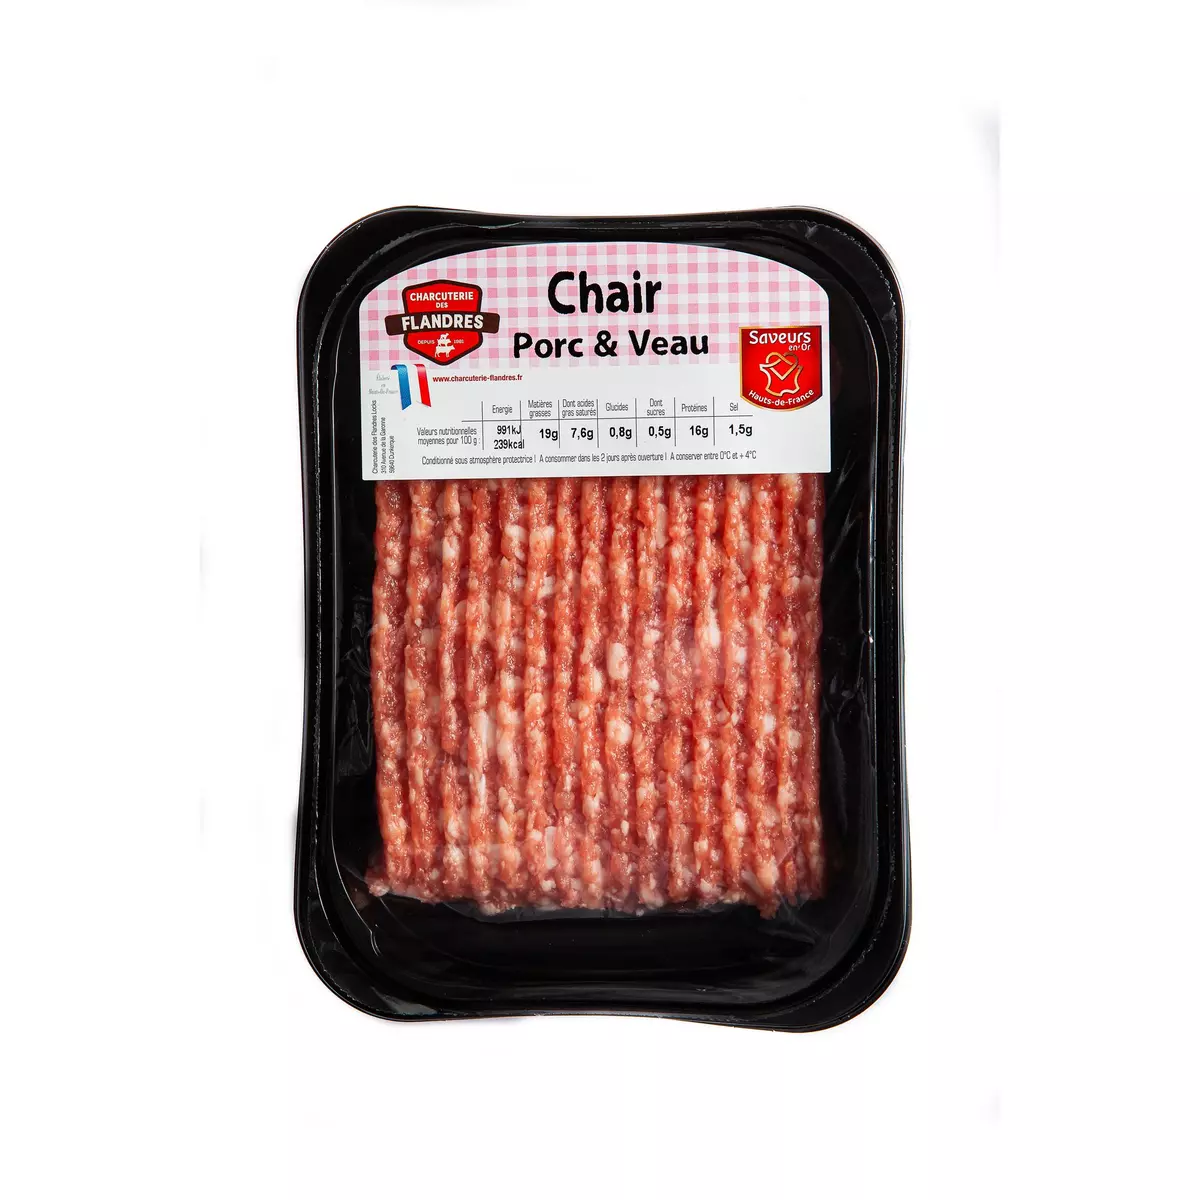 CHARCUTERIE DES FLANDRES Chair porc et veau 500g